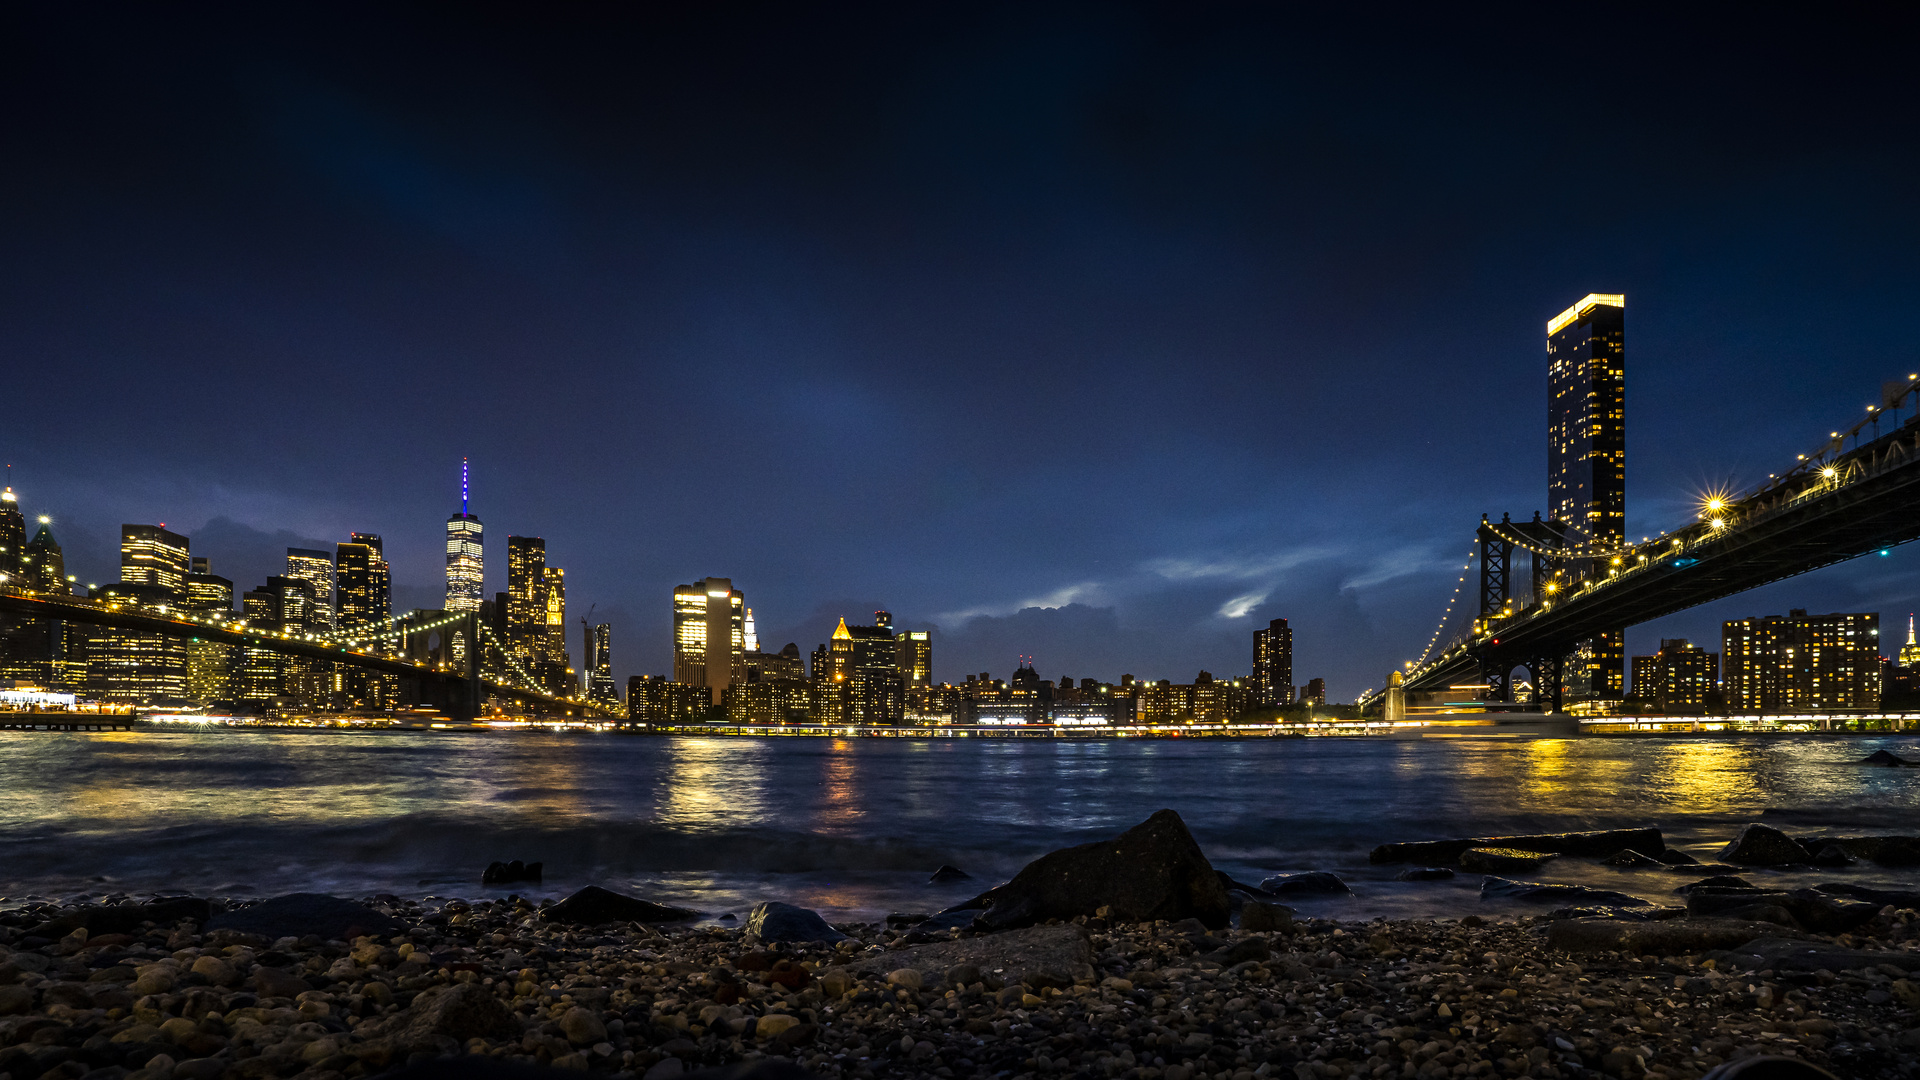 Brooklyn und Manhattan Bridge